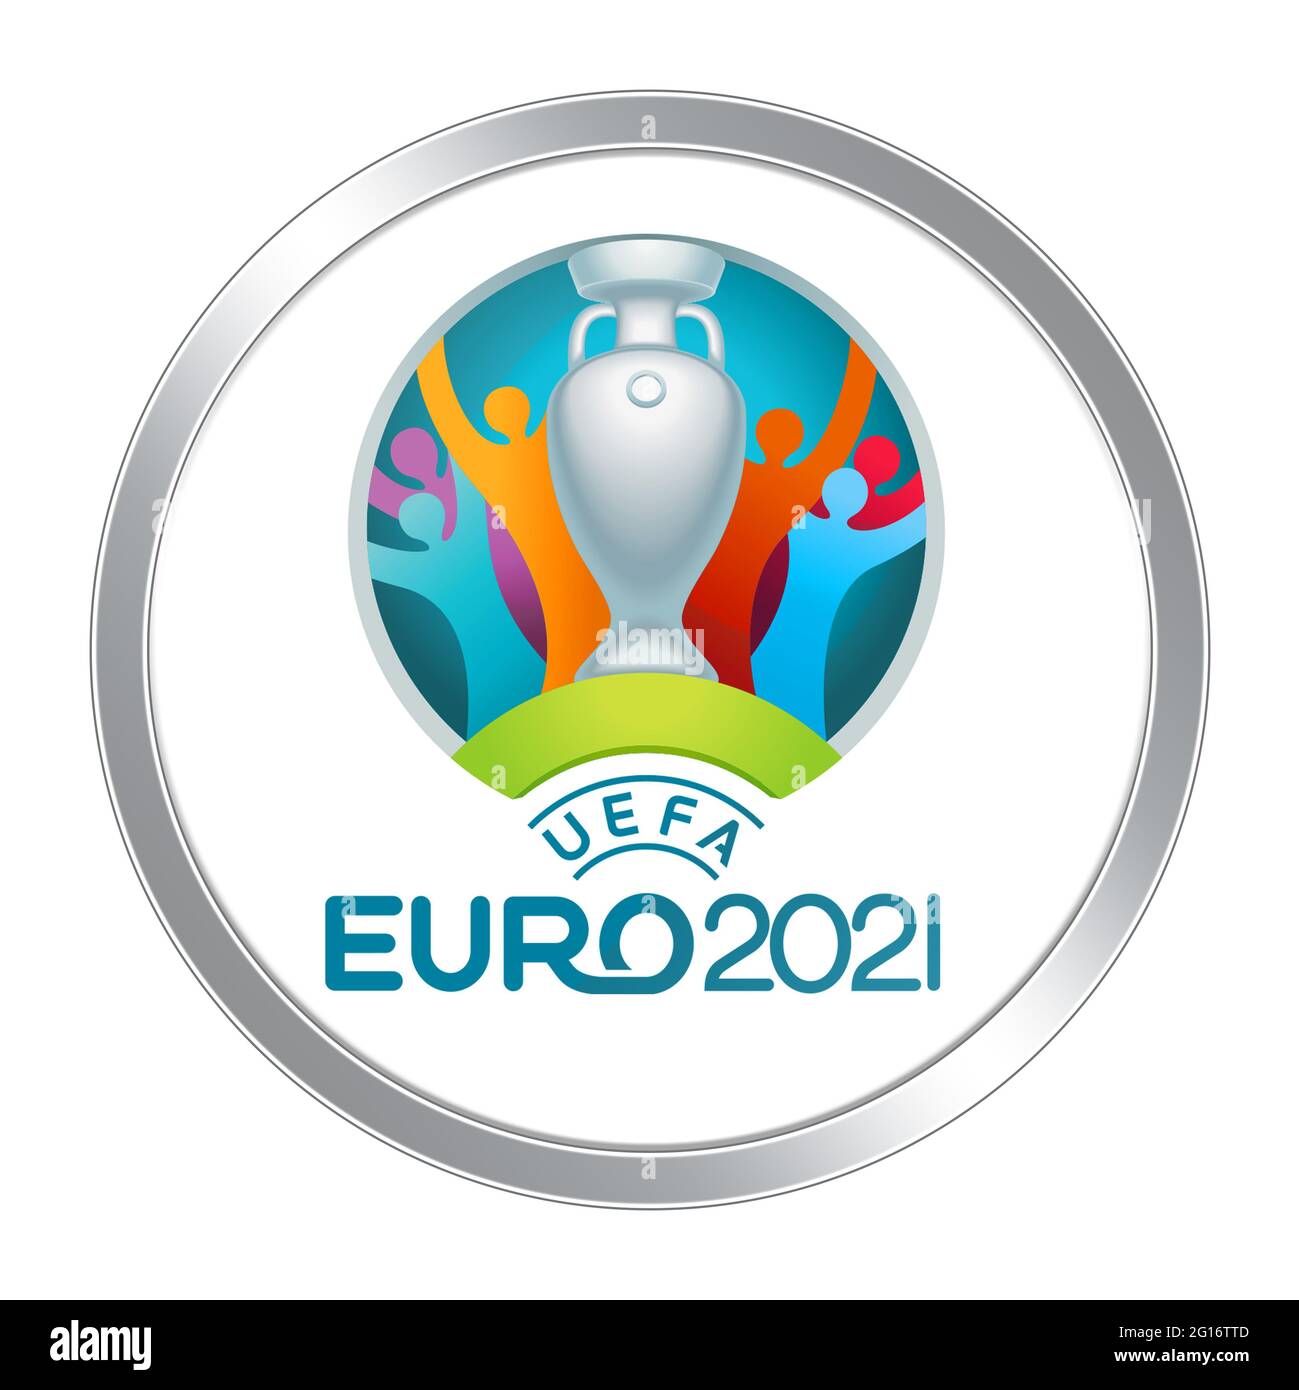 Logotipo de la UEFA EURO 2020 2021 Foto de stock